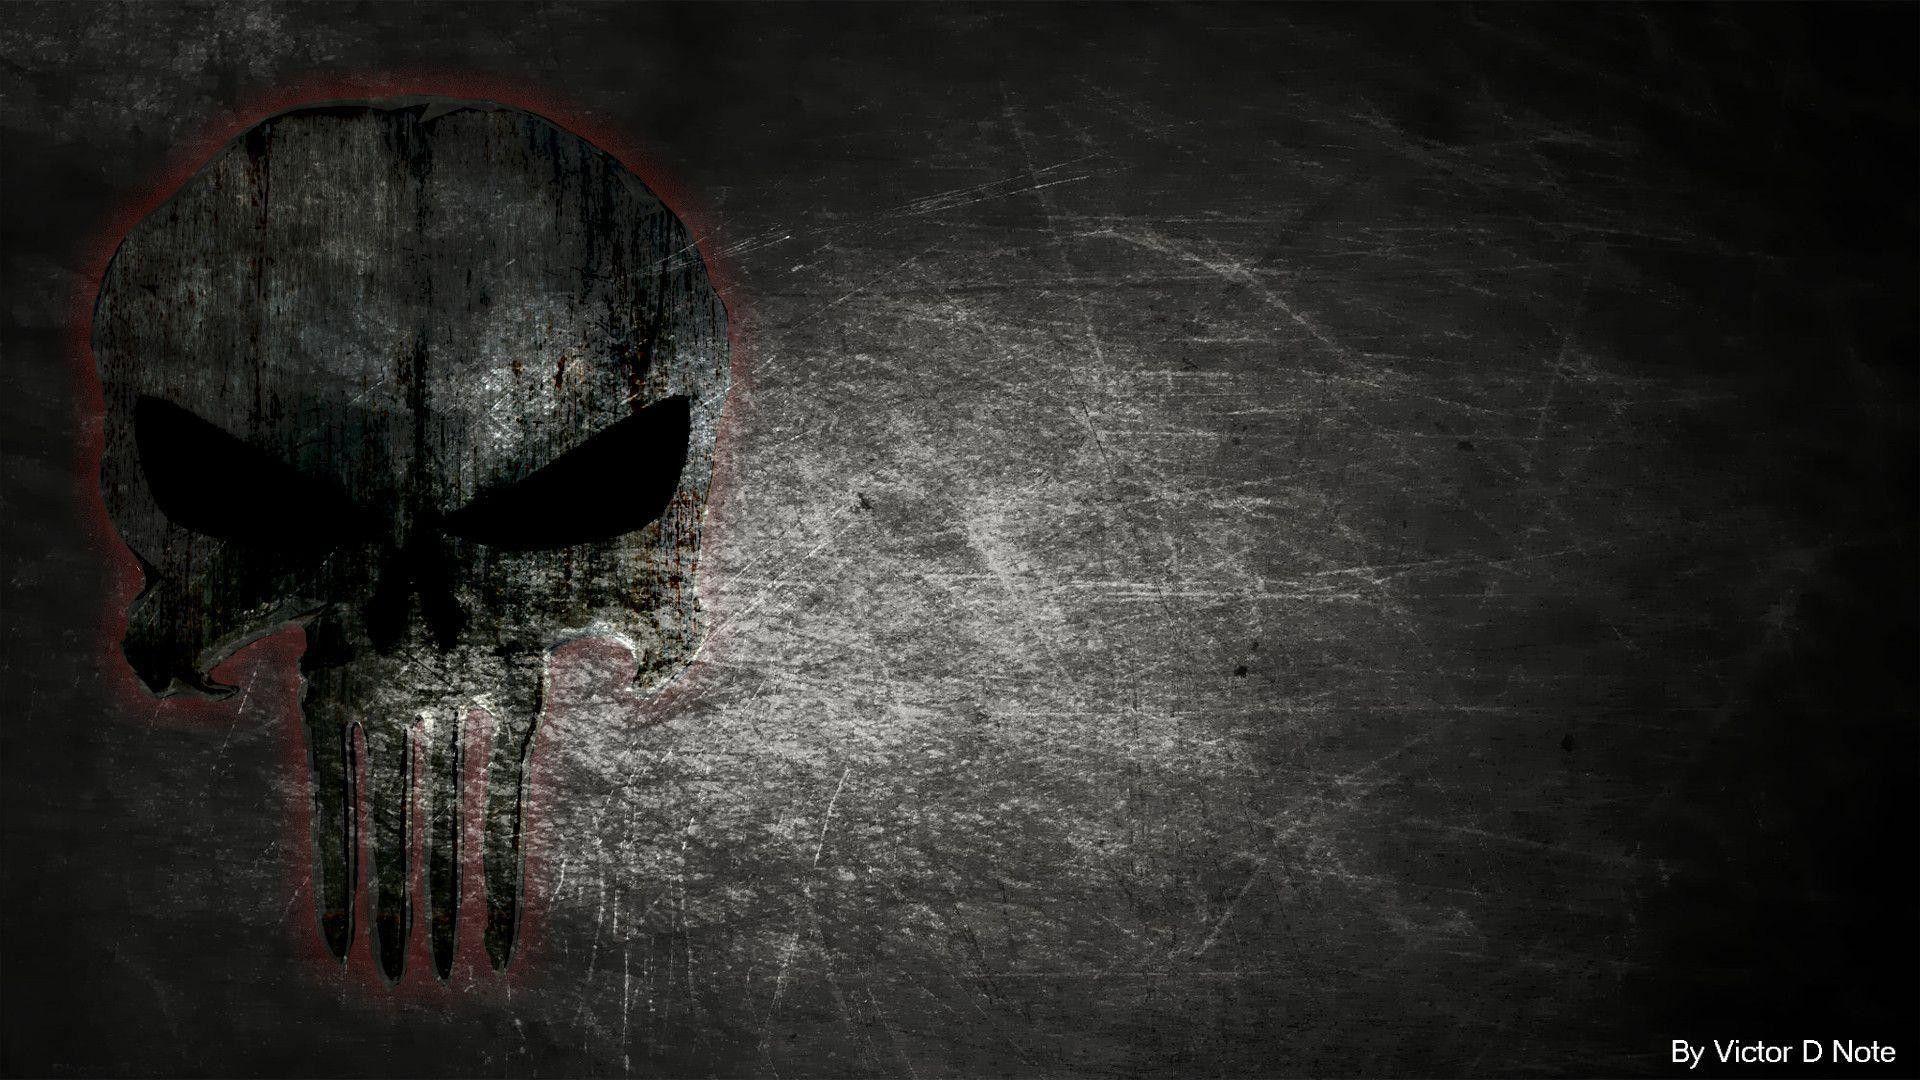 Punisher Wallpaper Skull